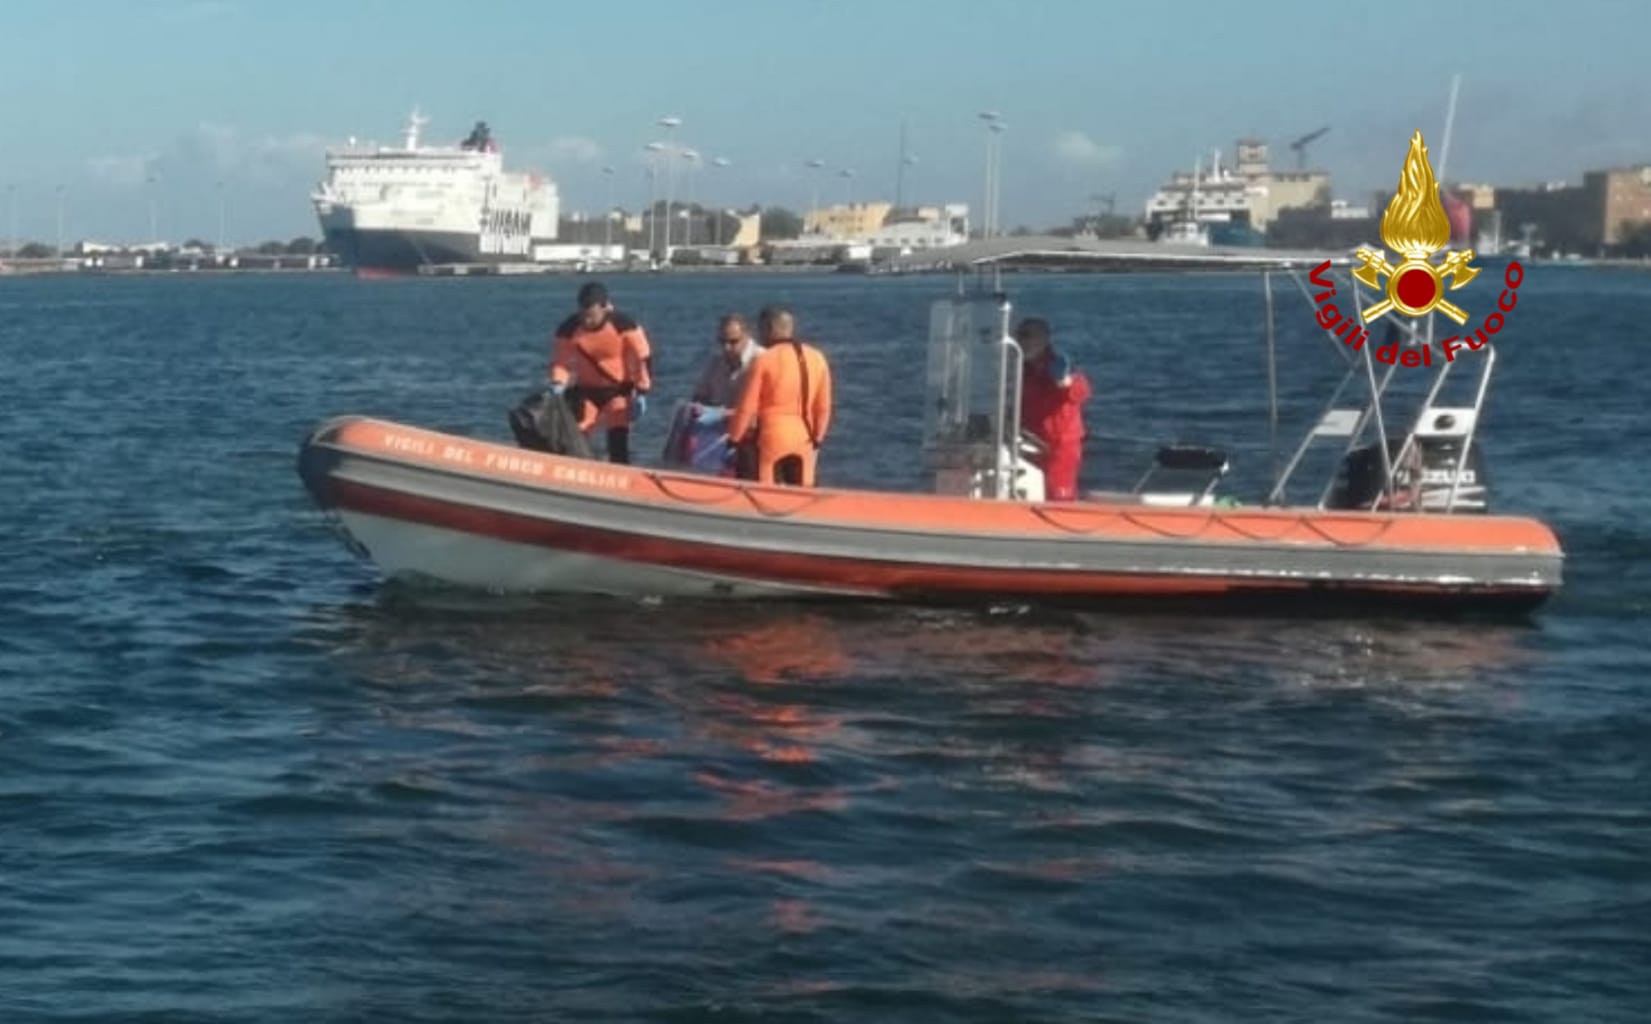 Tragedia in mare: marittimo cade da peschereccio, recuperato il corpo